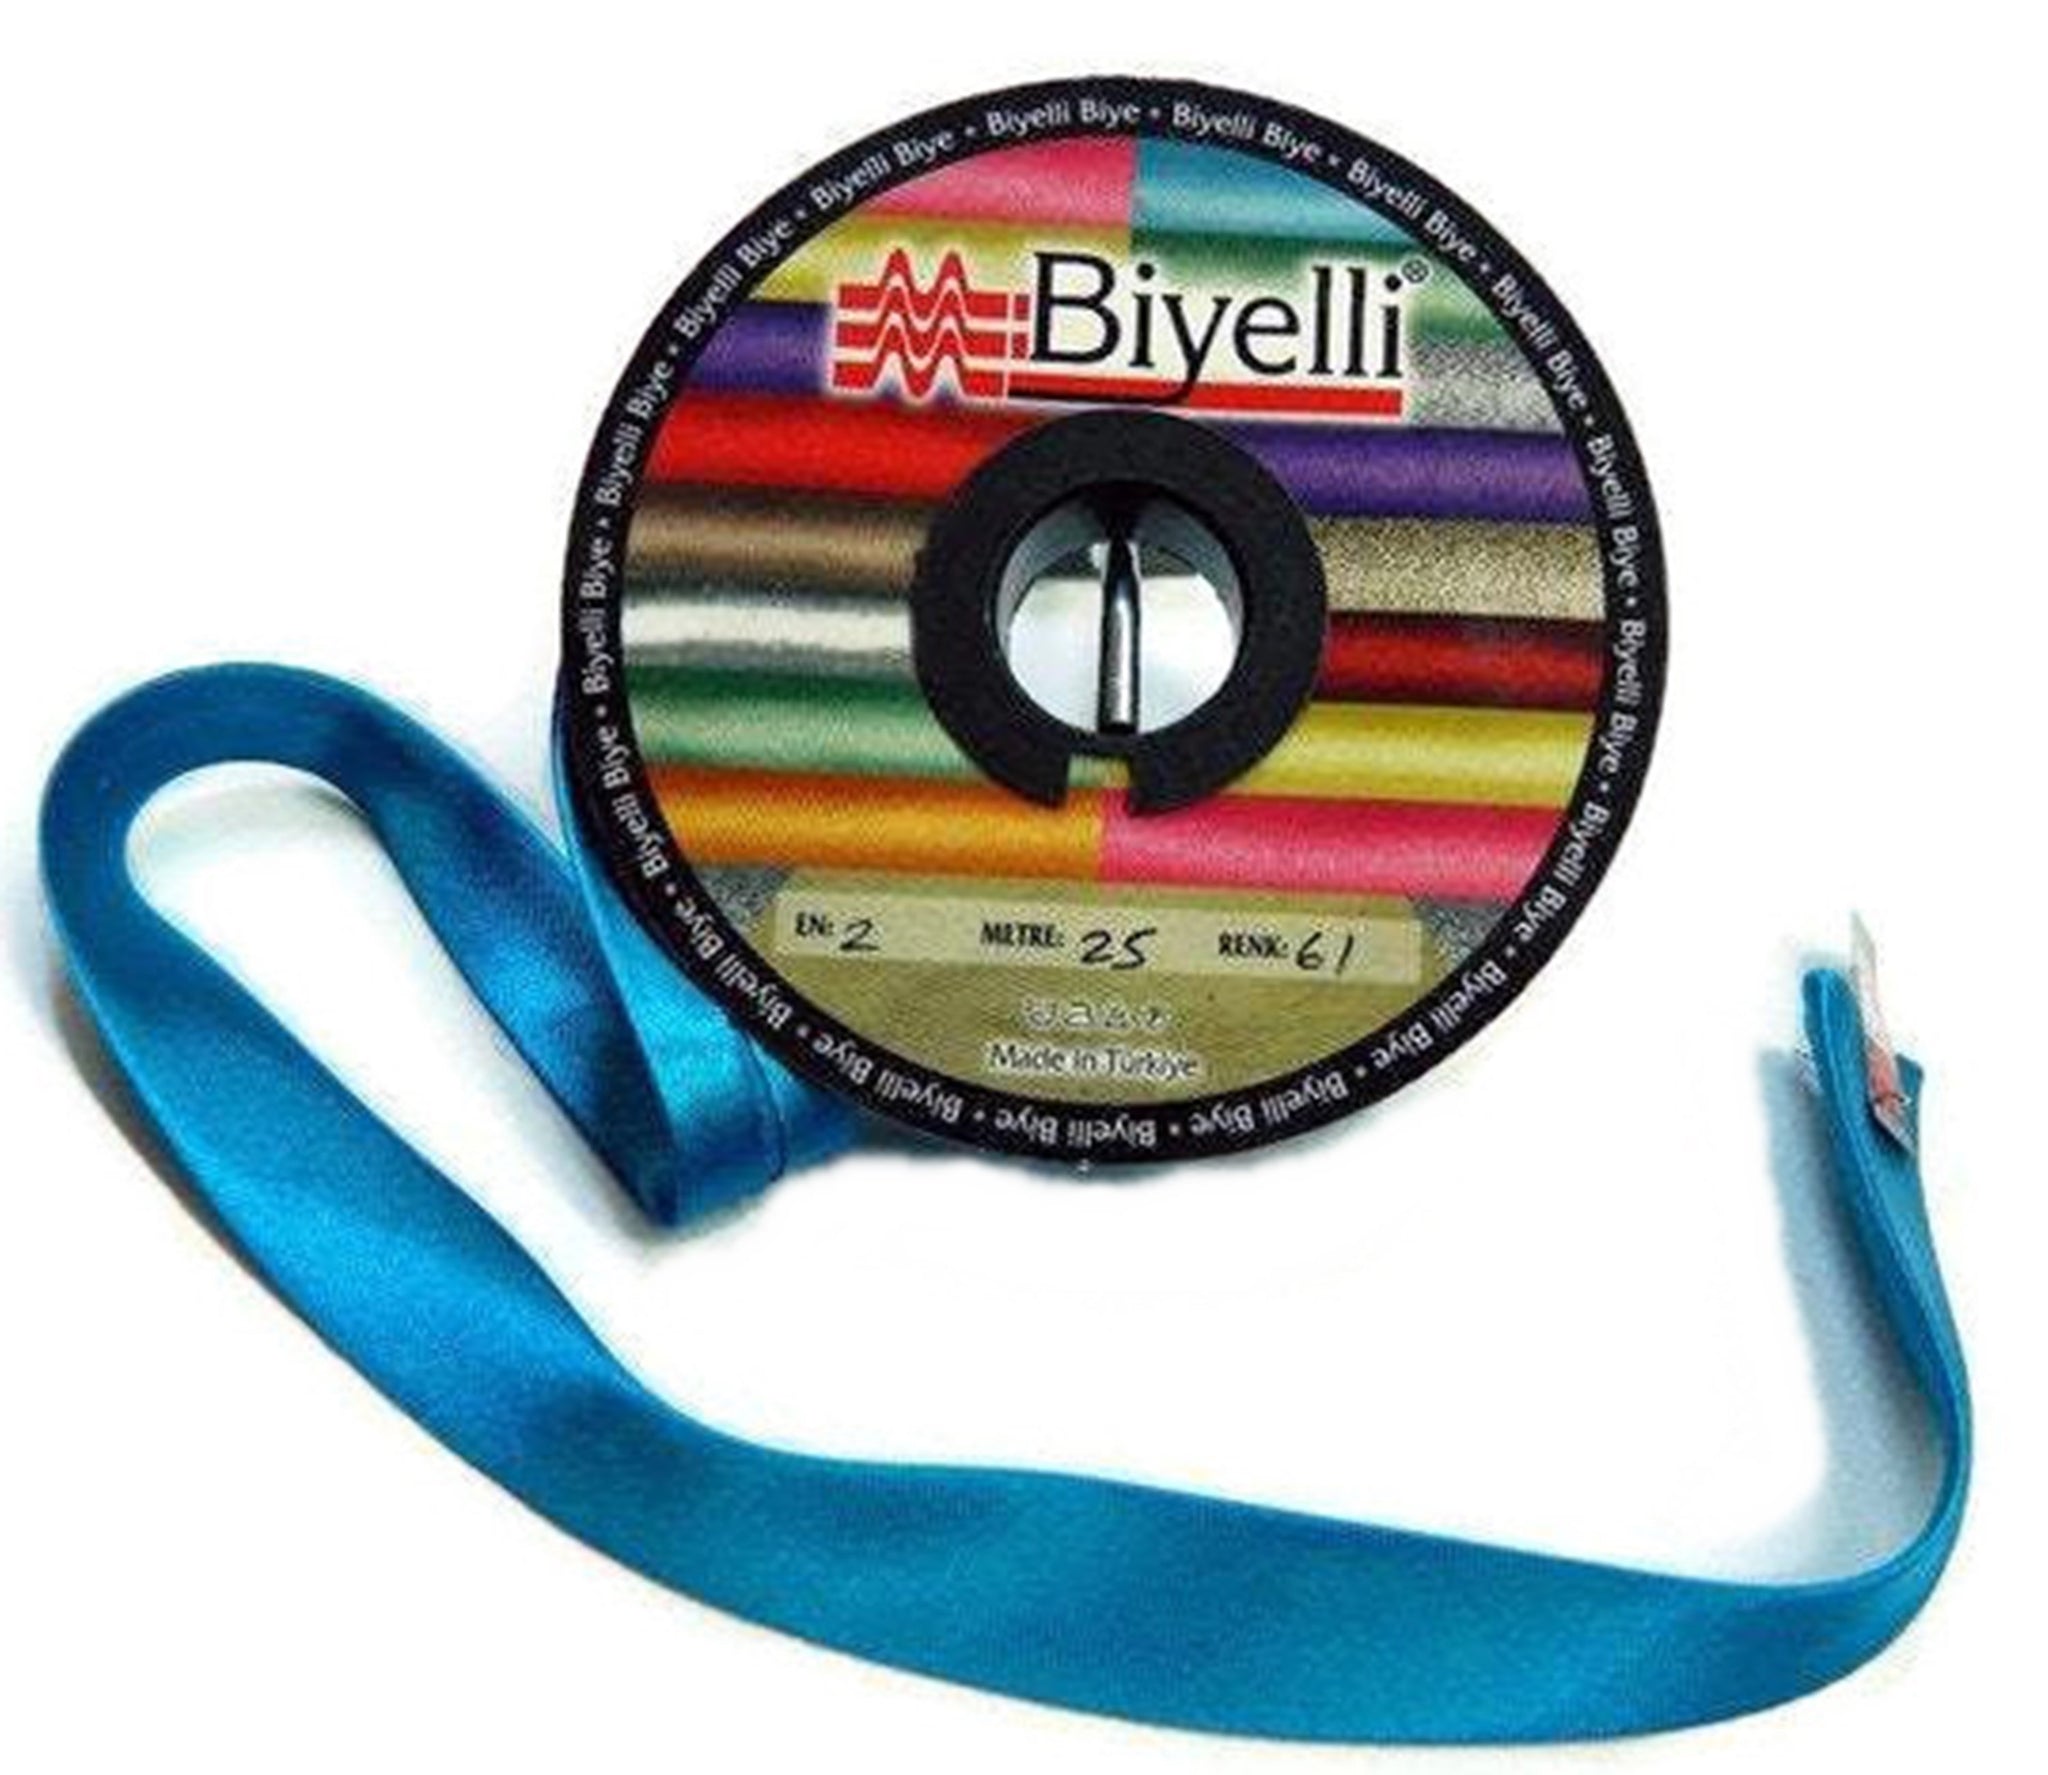 20 mm Satin bias tape, bias binding, trim (0.78 inches), Bias Binding, Bia, Tape, Triming, sewing craft, SB61